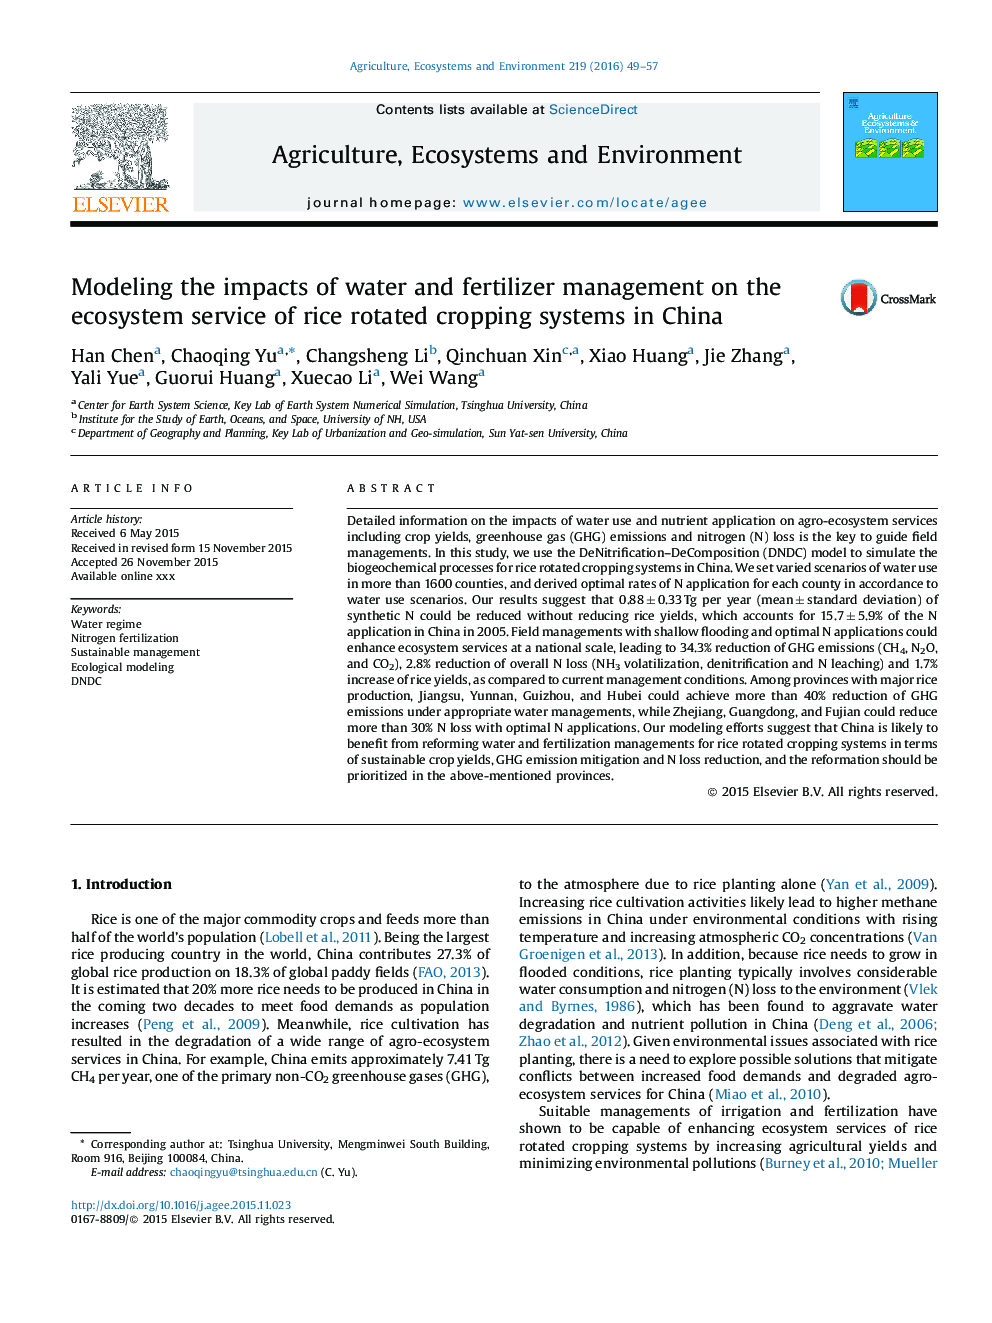 مدل سازی اثرات مدیریت آب و کود بر روی خدمات اکوسیستم سیستم های برداشت برنج در چین 